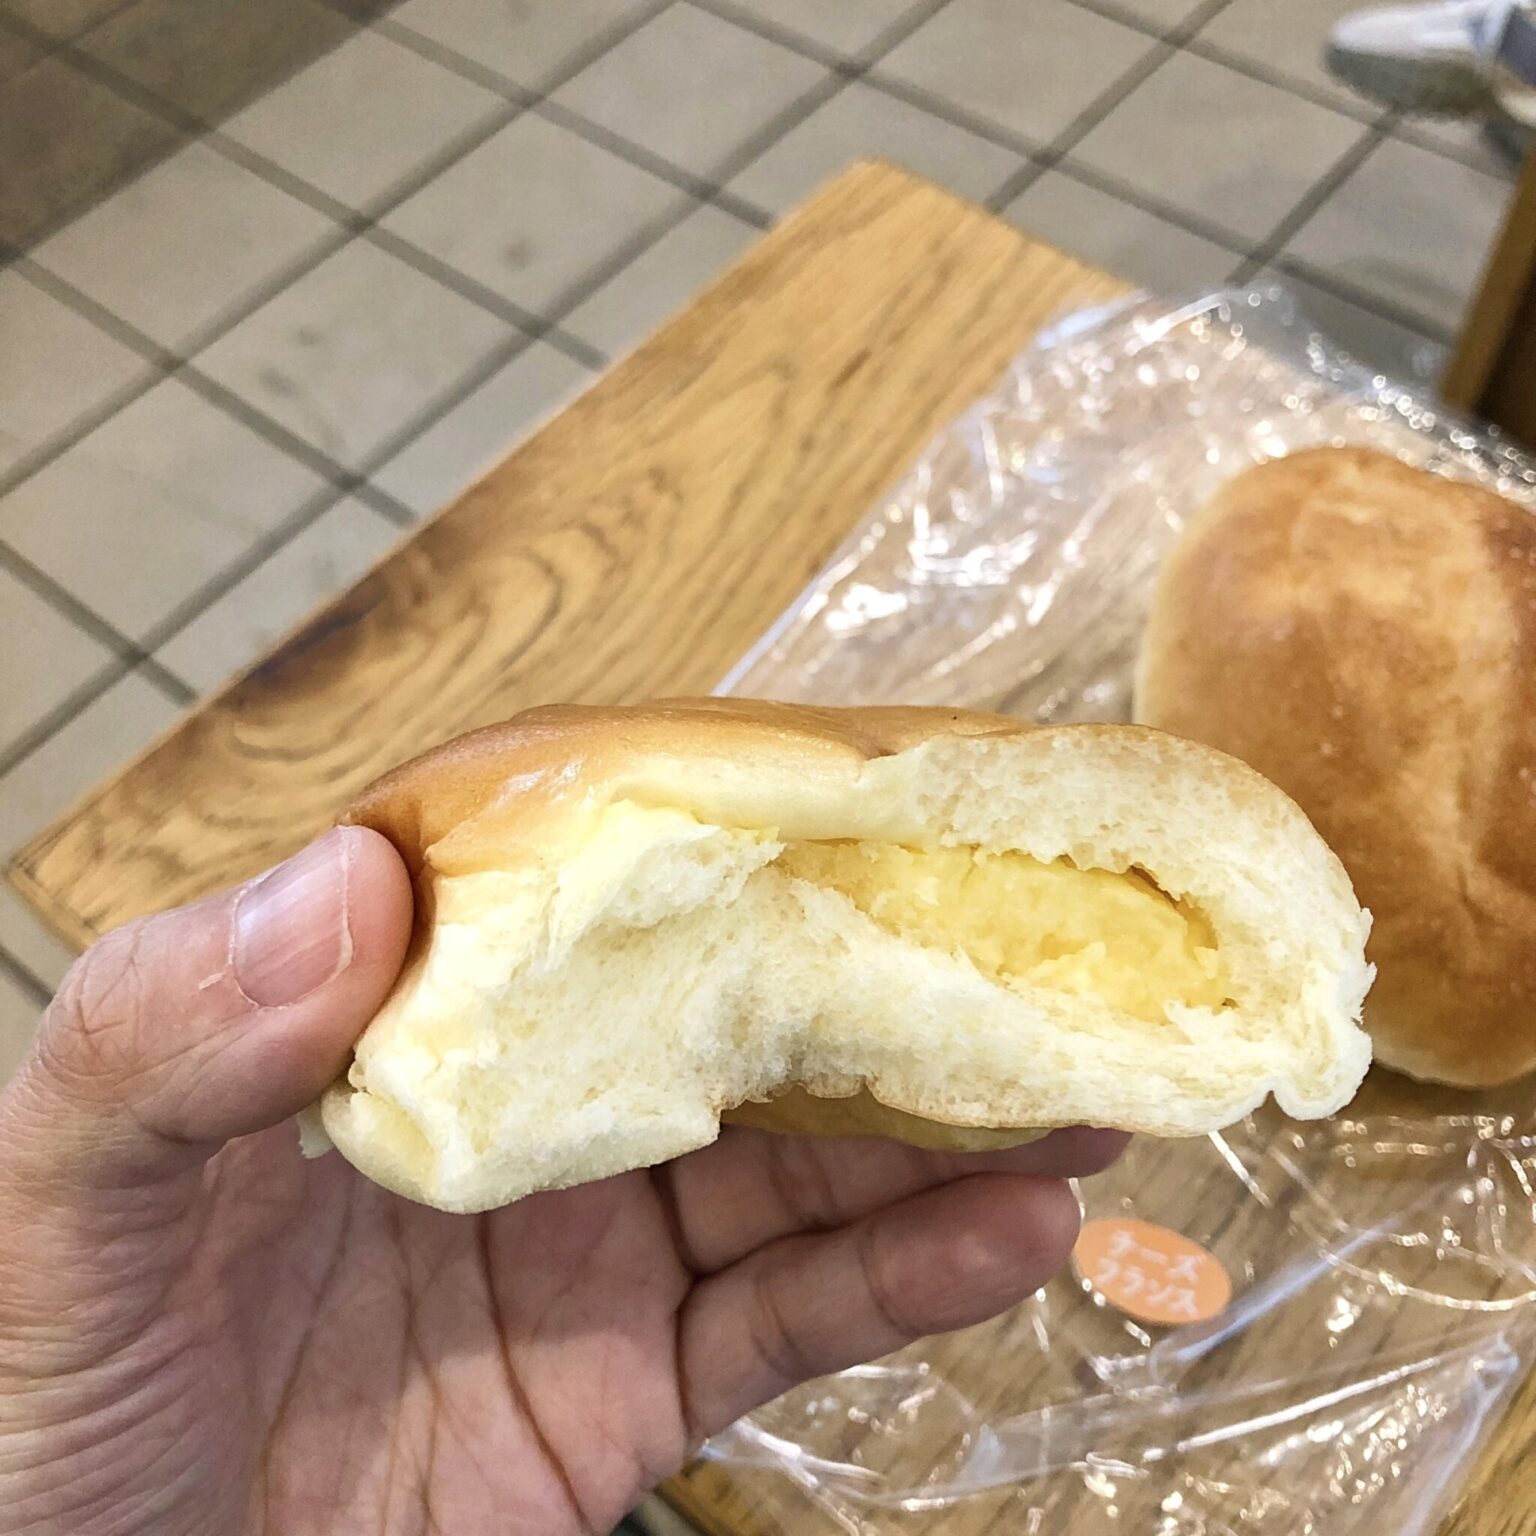 クリームパンは2種類あり、こちらは濃厚カスタード。